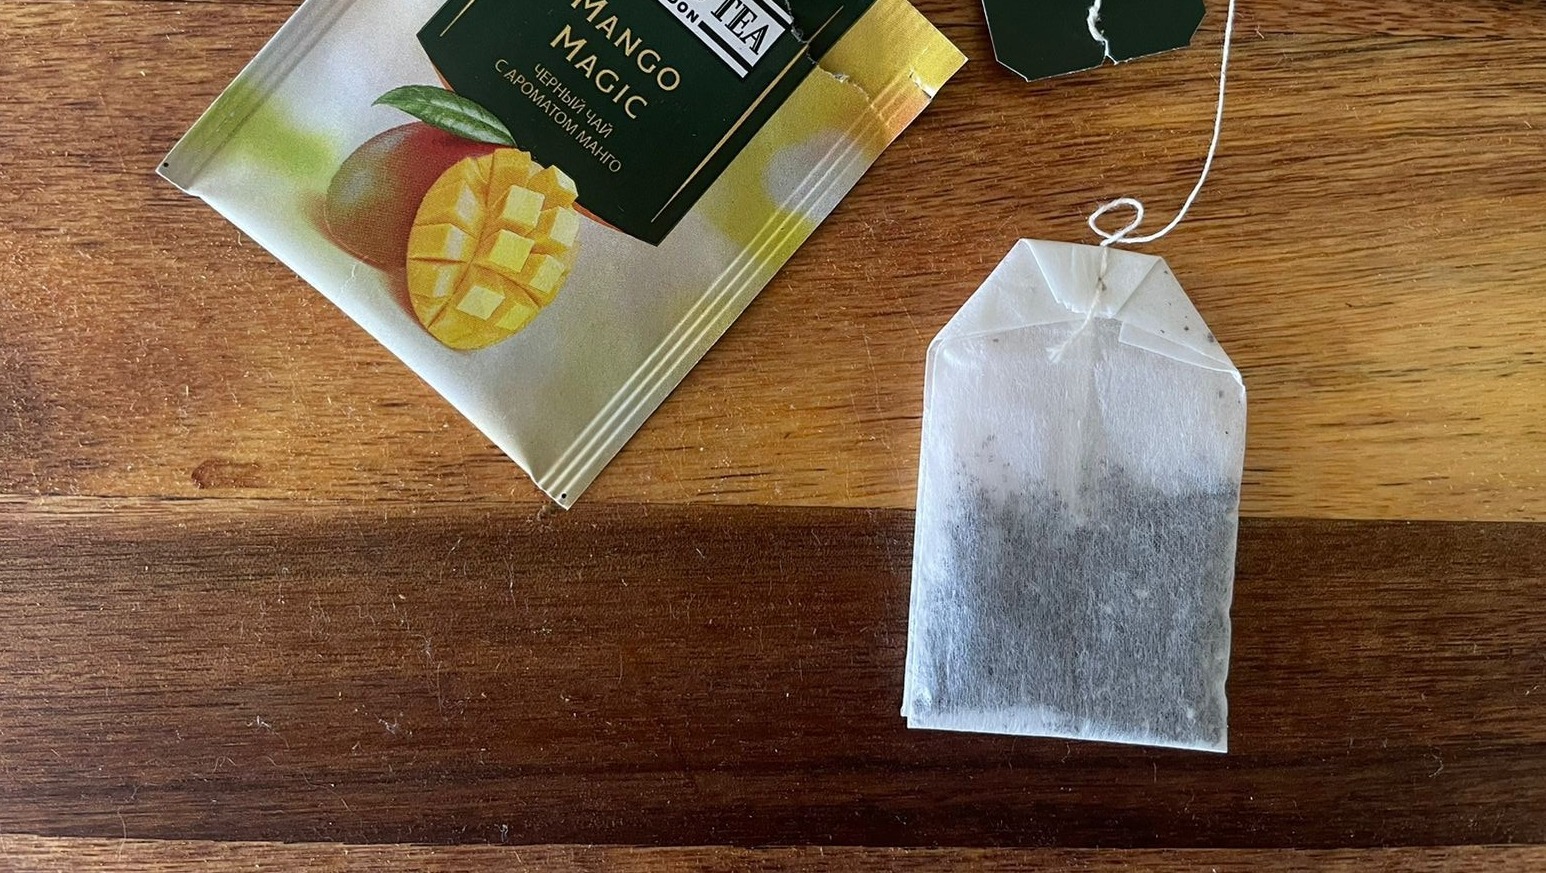 Жители Ростовской области сообщают о белых таблетках в пакетиках чая: правда или фейк